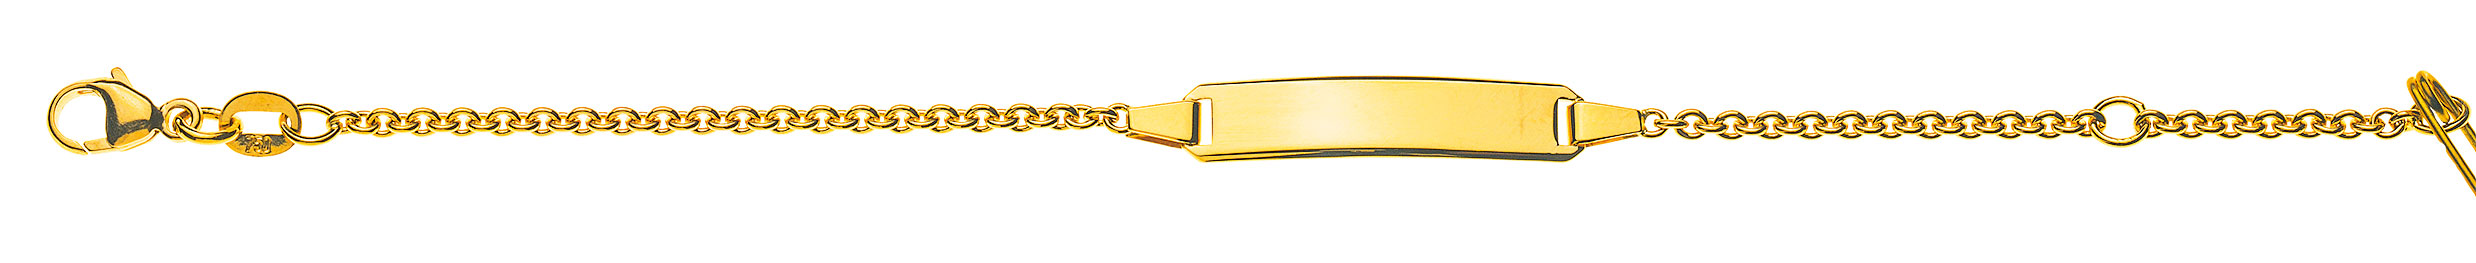 AURONOS Prestige ID-Bracelet en or jaune 18k Chaîne d'ancre ronde 16cm